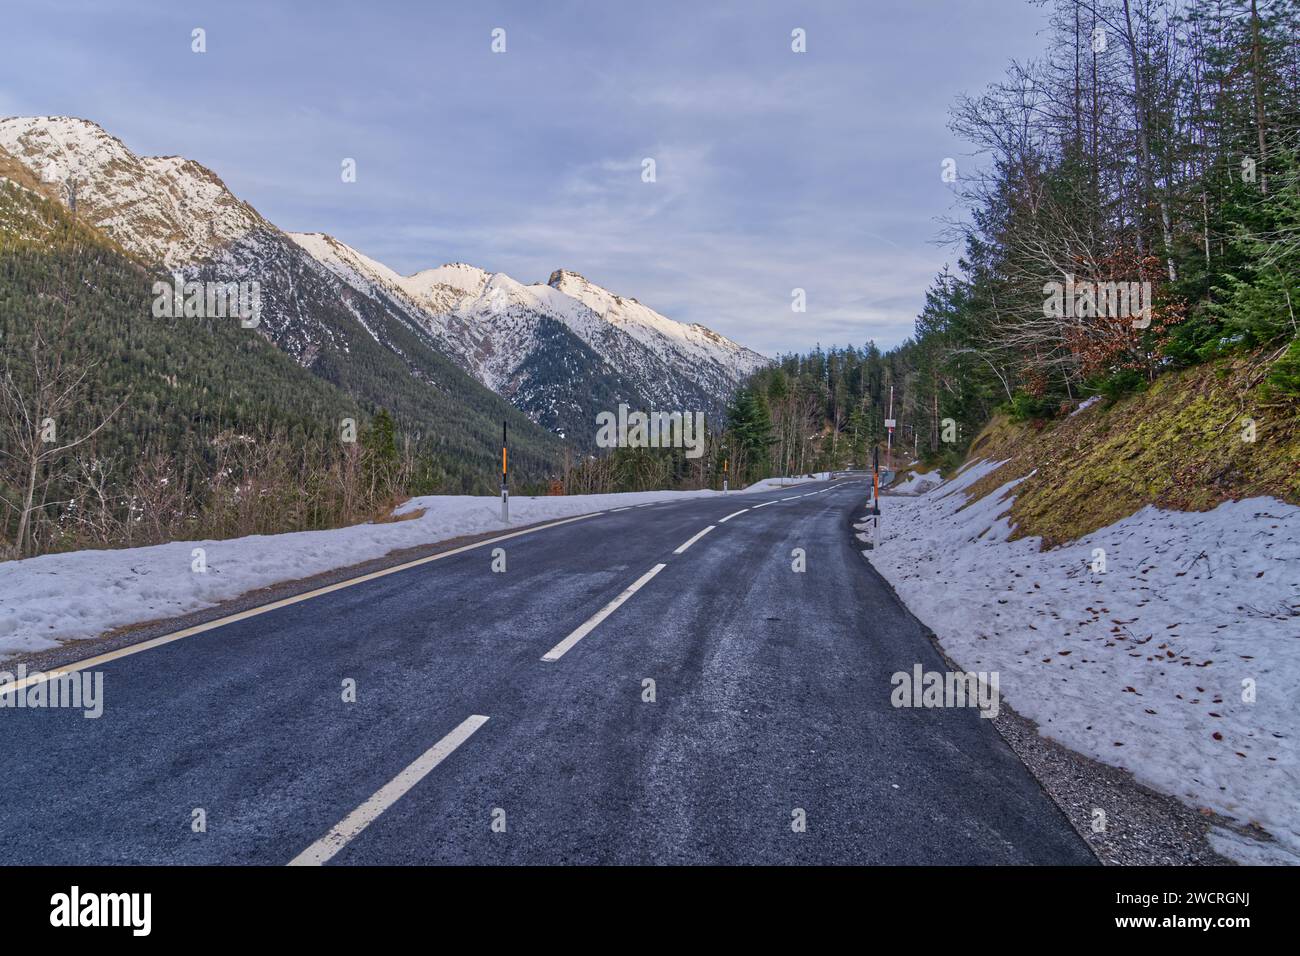 Una strada di montagna innevata che mostra la serenità e la bellezza dei paesaggi invernali Foto Stock